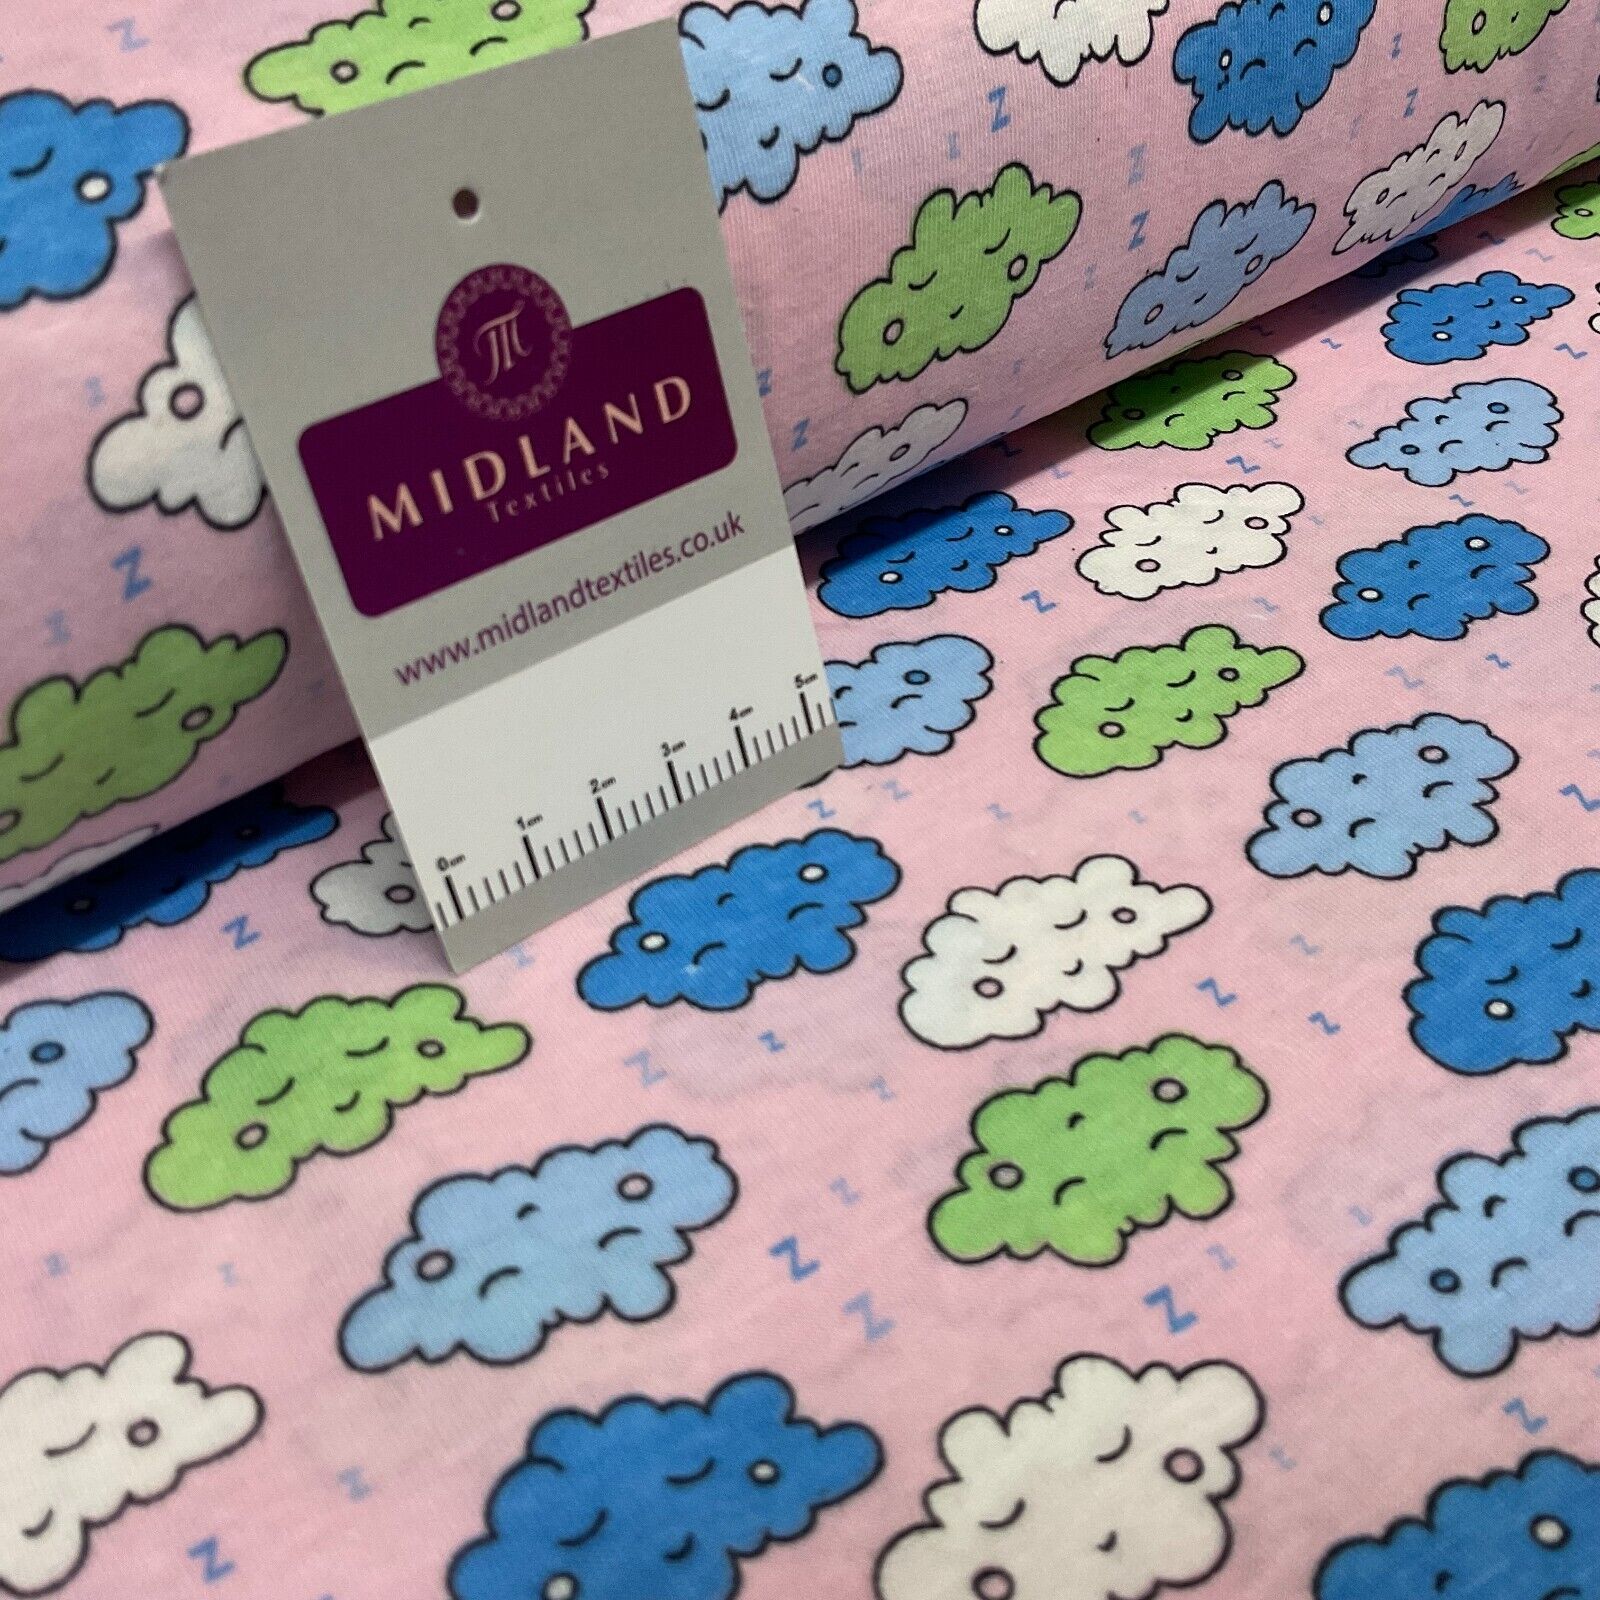 Children's Sleeping Cloud cotton stretch jersey novelty dress fabric M1713